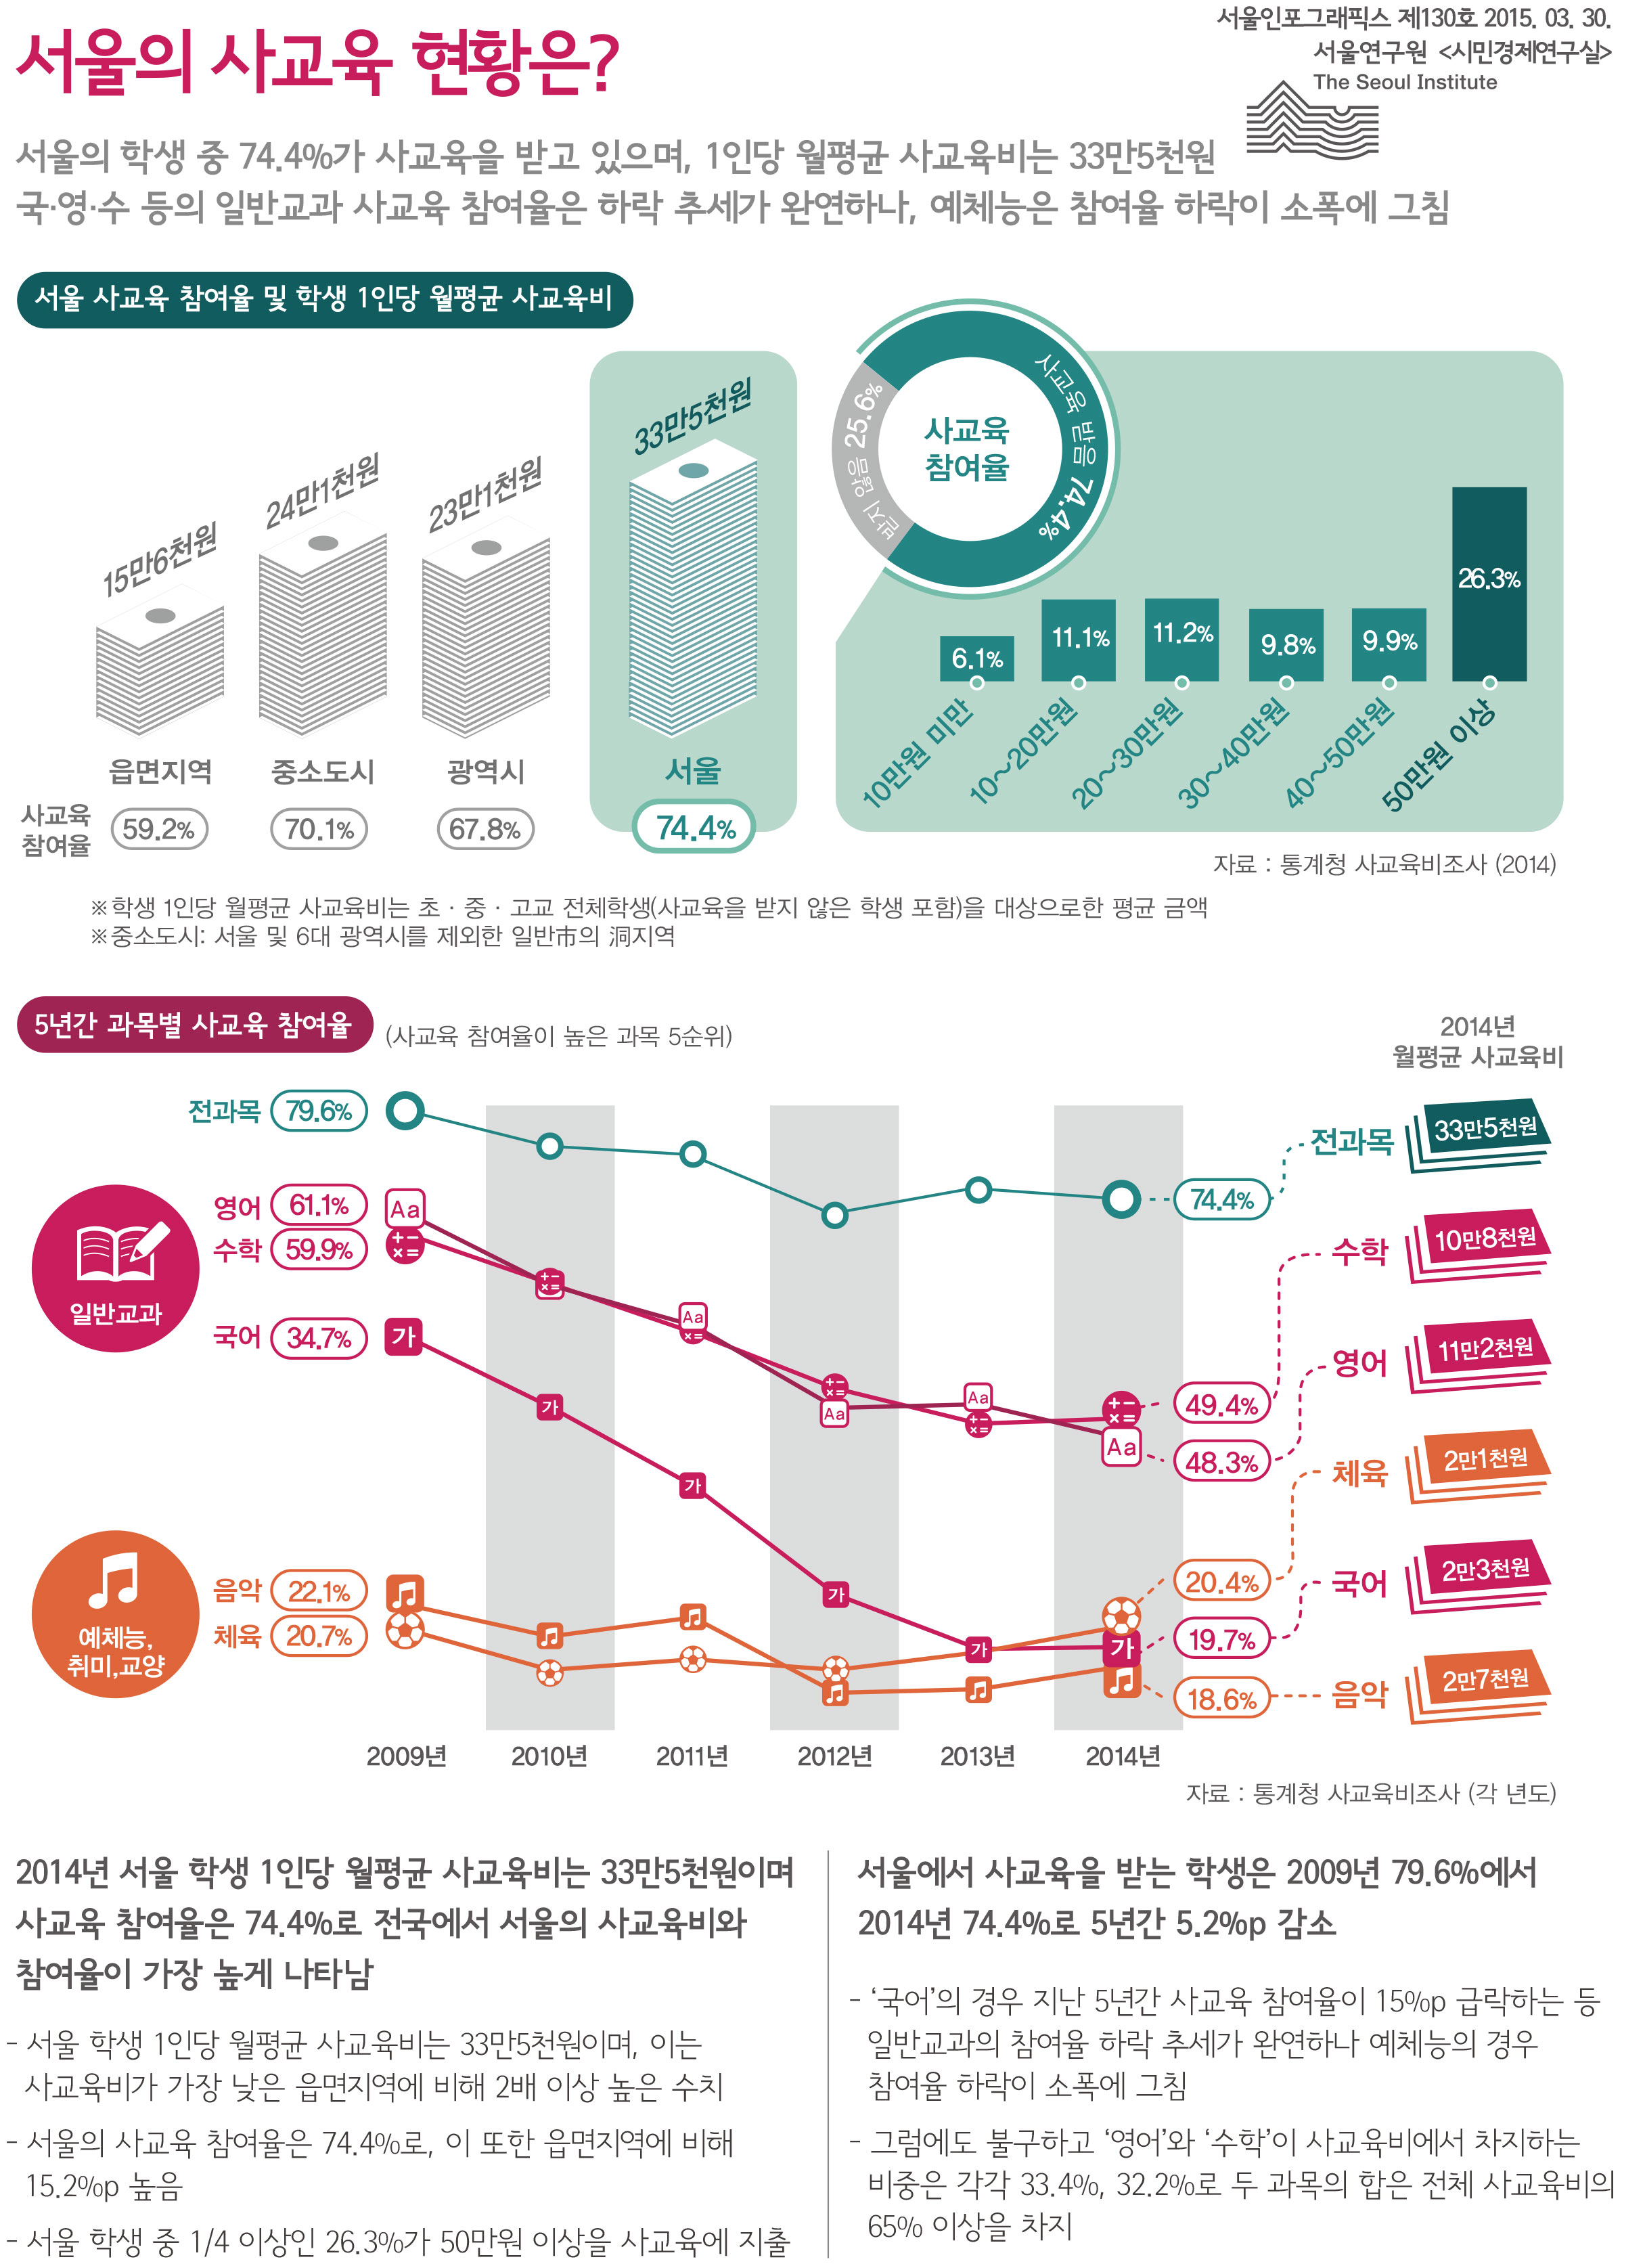 서울의 사교육 현황은? 서울인포그래픽스 제130호 2015년 3월 30일 서울의 학생 중 74.4%가 사교육을 받고 있으며, 1인당 월평균 사교육비는 33만5천원. 국·영·수 등의 일반교과 사교육 참여율은 하락 추세가 완연하나, 예체능은 참여율 하락이 소폭에 그침으로 정리 될 수 있습니다. 인포그래픽으로 제공되는 그래픽은 하단에 표로 자세히 제공됩니다.